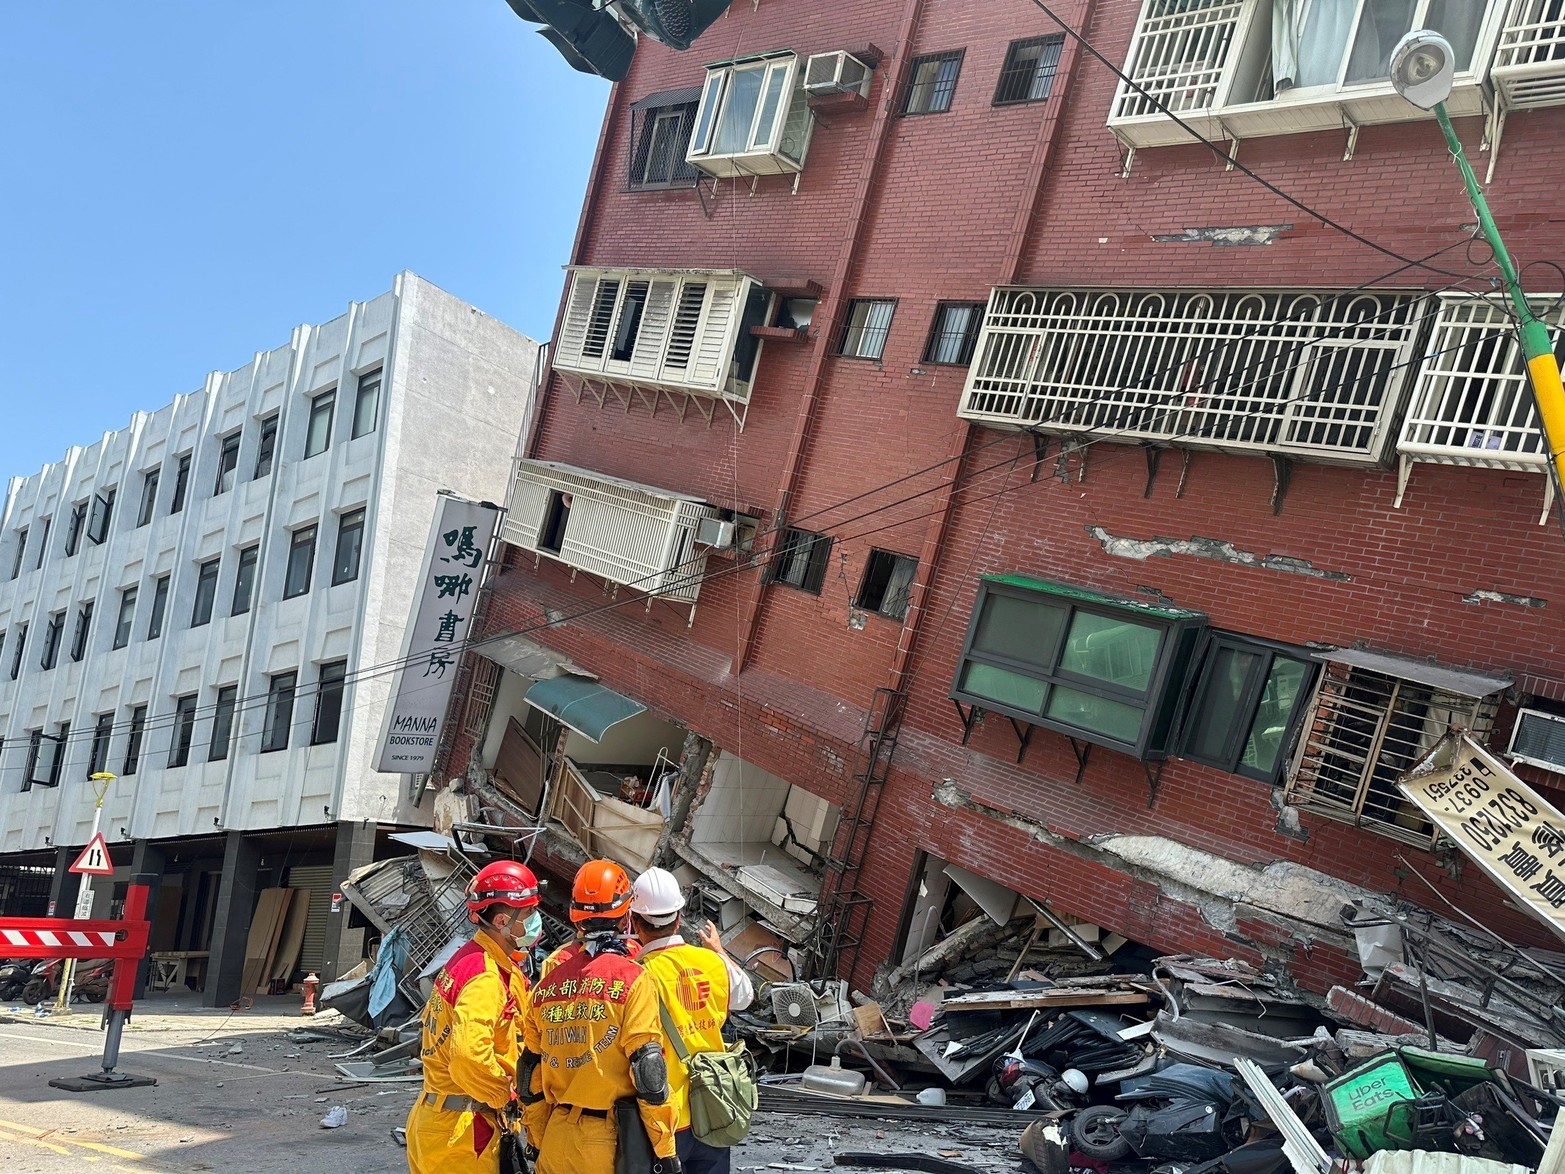 Los bomberos trabajan en el lugar donde un edificio se derrumbó tras el terremoto, en Hualien, Taiwán, en este folleto proporcionado por la Agencia Nacional de Bomberos de Taiwán.